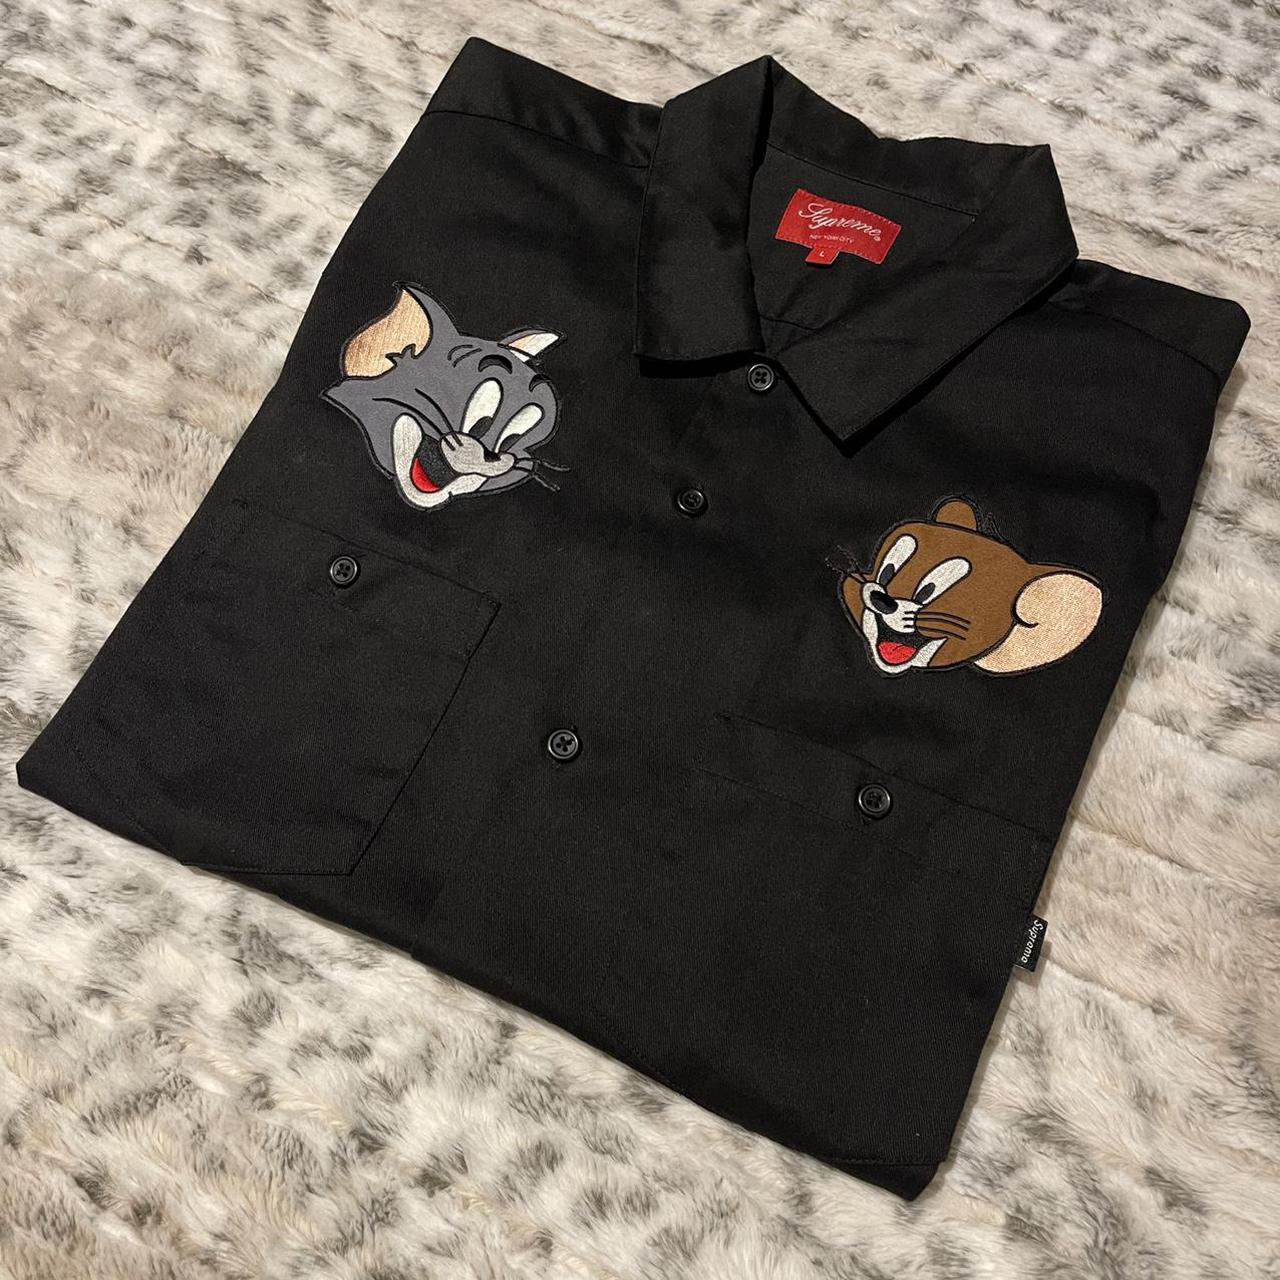 Supreme x Tom & Jerry work shirt black size large... - Depop